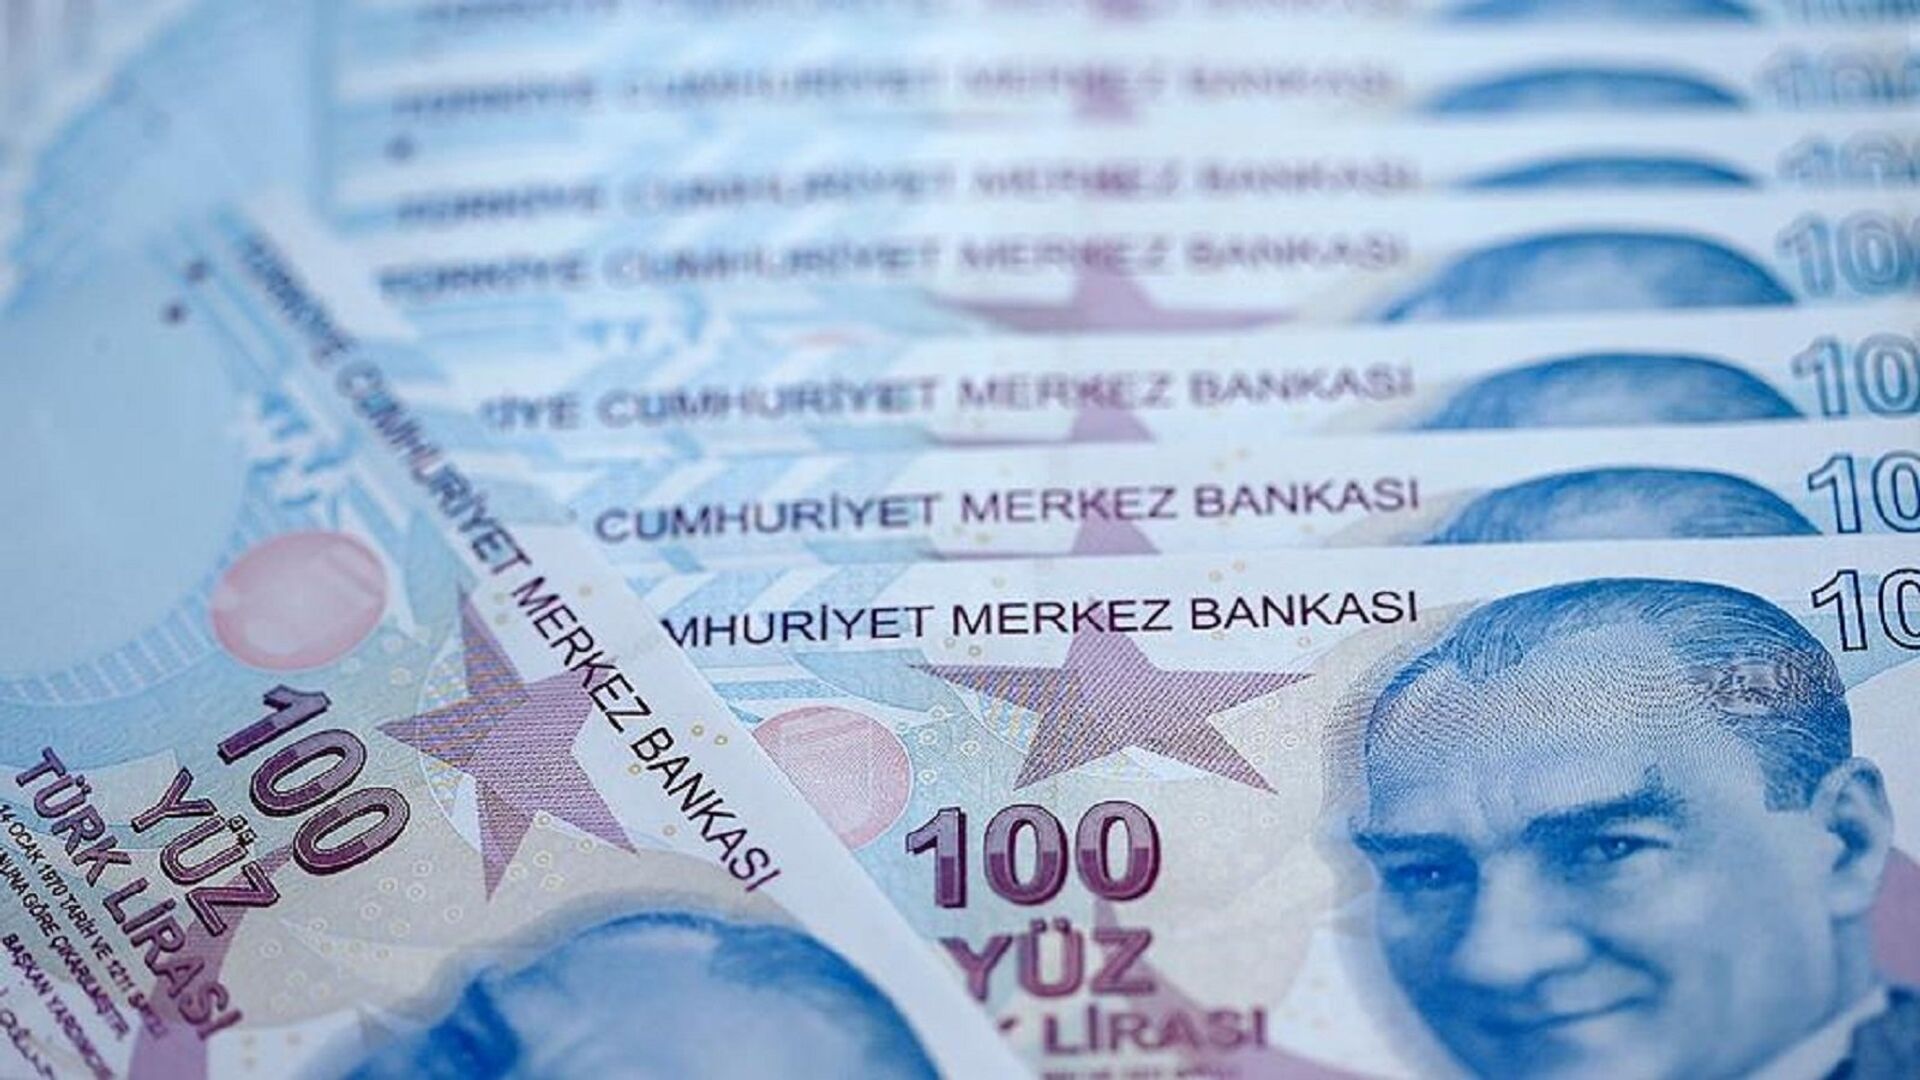 Denizbank'tan SABAH Saatlerinde Müjdeli Haber: 100.000 TL'ye Kadar Ödeme Başladı